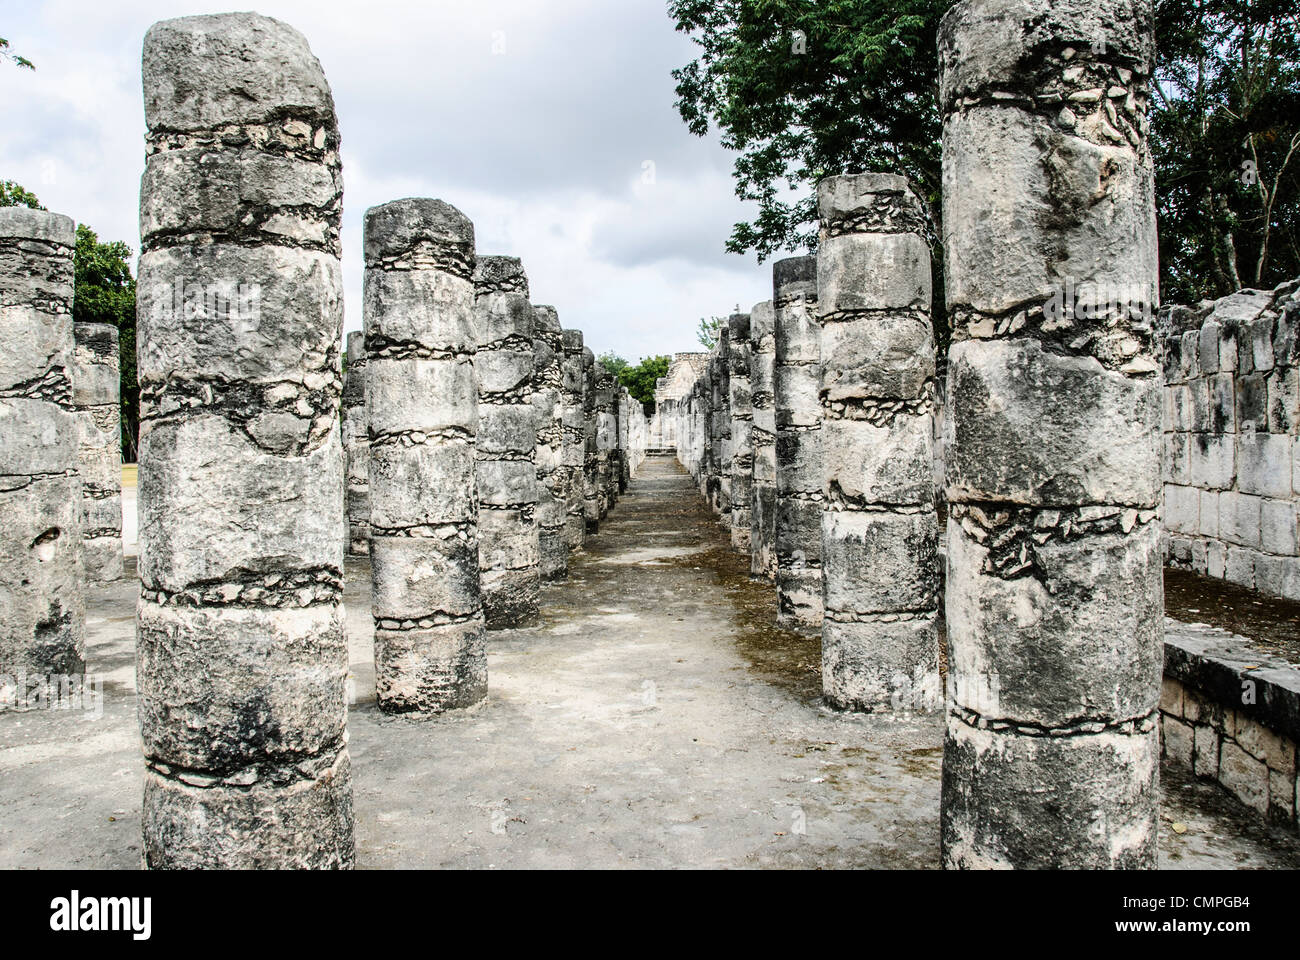 CHICHEN ITZA, Mexique - rangées de colonnes au Temple des Guerriers de Chichen Itza ruines Maya au Mexique, péninsule du Yucatan. Banque D'Images